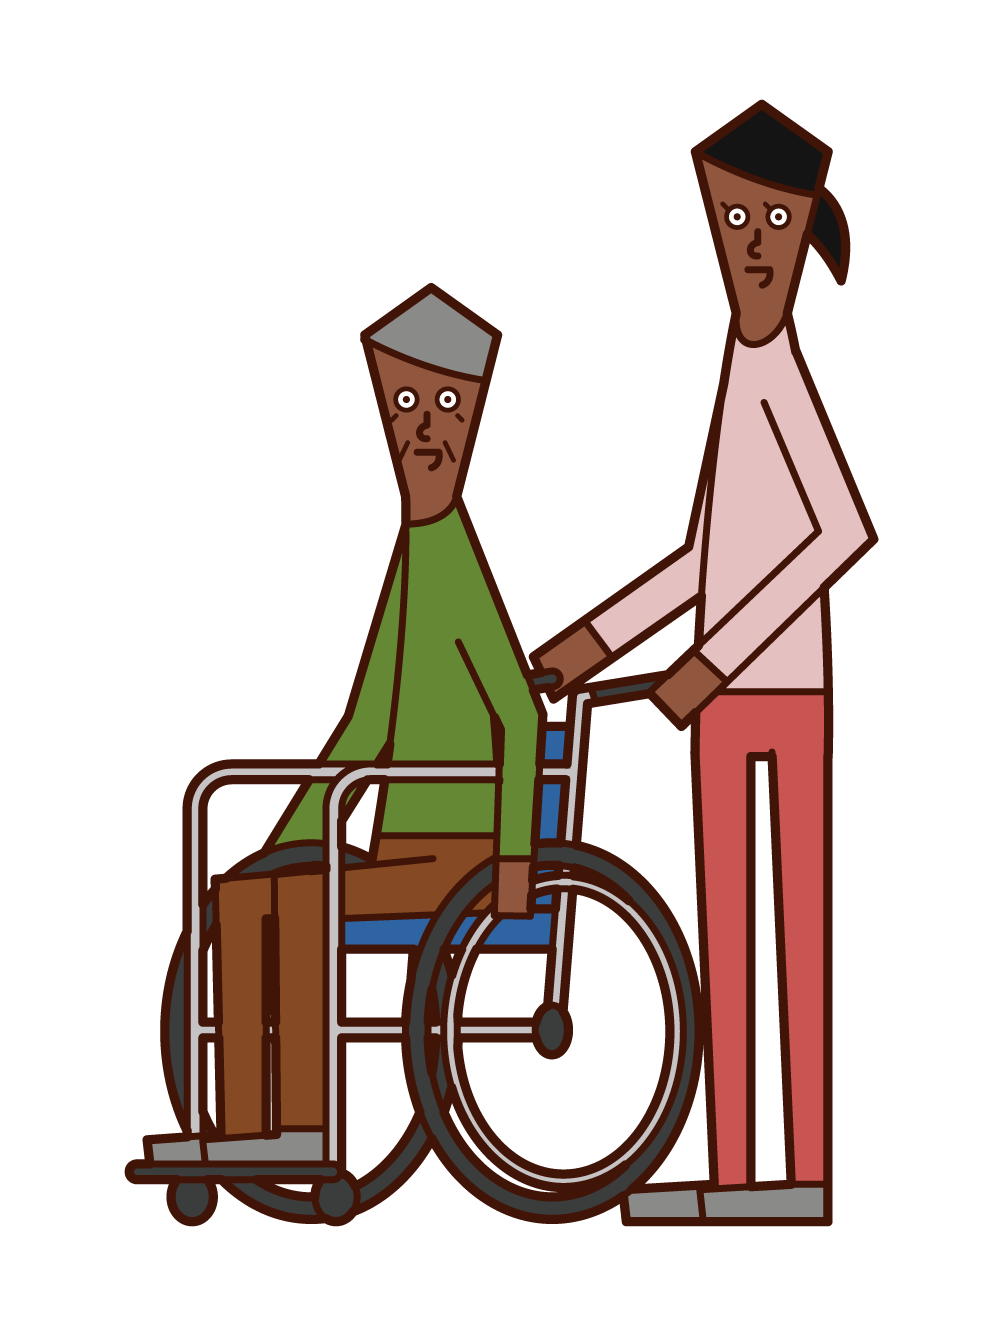 車椅子に乗る老人 男性 と押す人 女性 のイラスト フリーイラスト素材 Kukukeke ククケケ